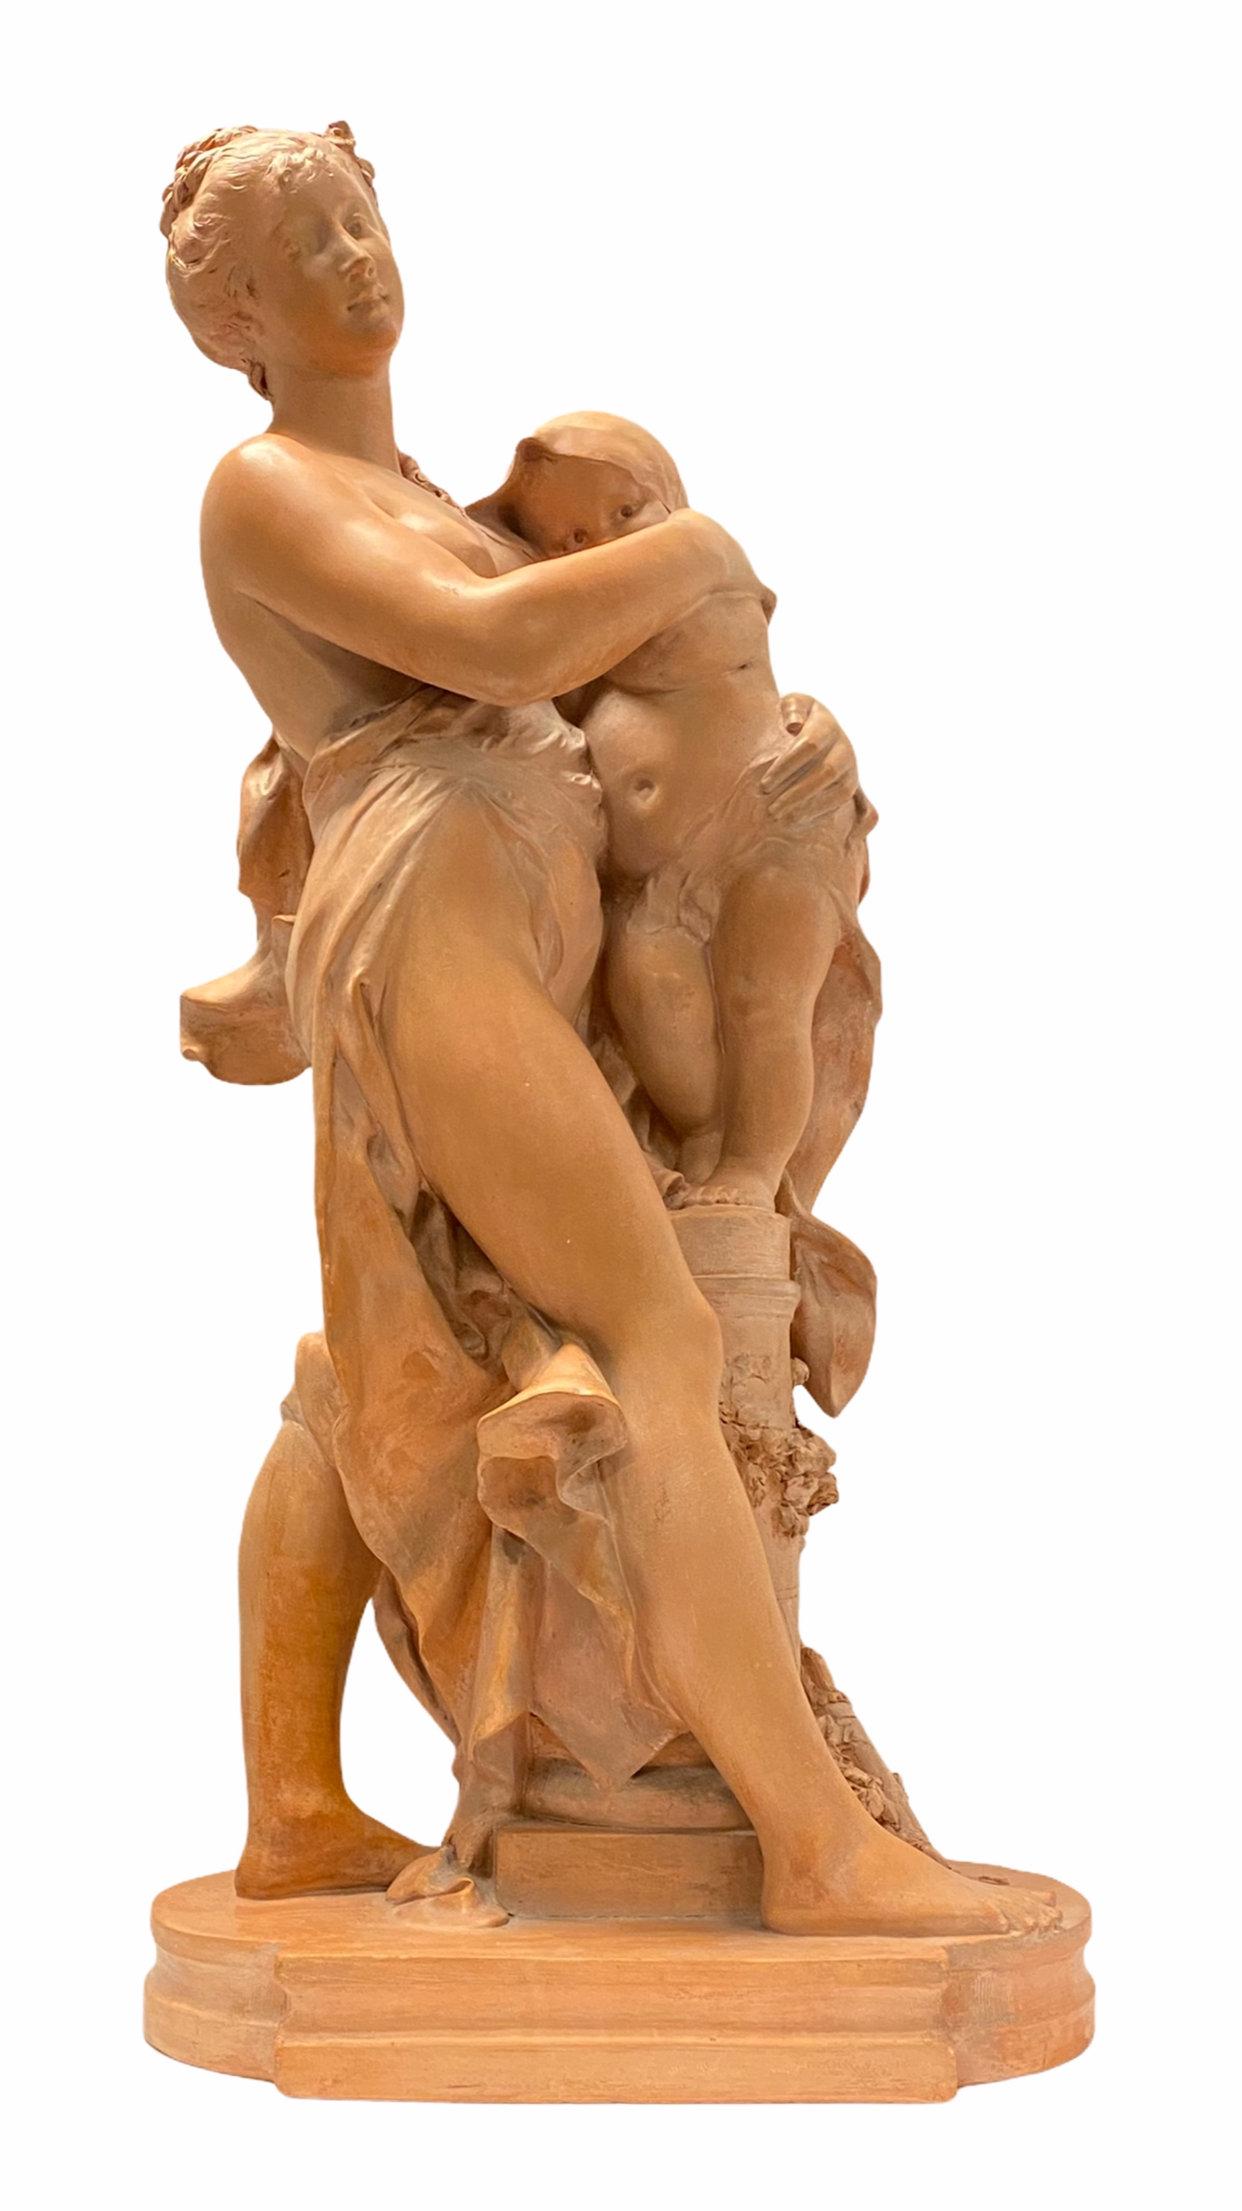 Escultura francesa de terracota de la madre y el niño del siglo XIX de muy buena calidad Firmada Rougelet ( Benoît.
Benoît (Benedict) Rougelet (FRANCÉS, 1834-1894).